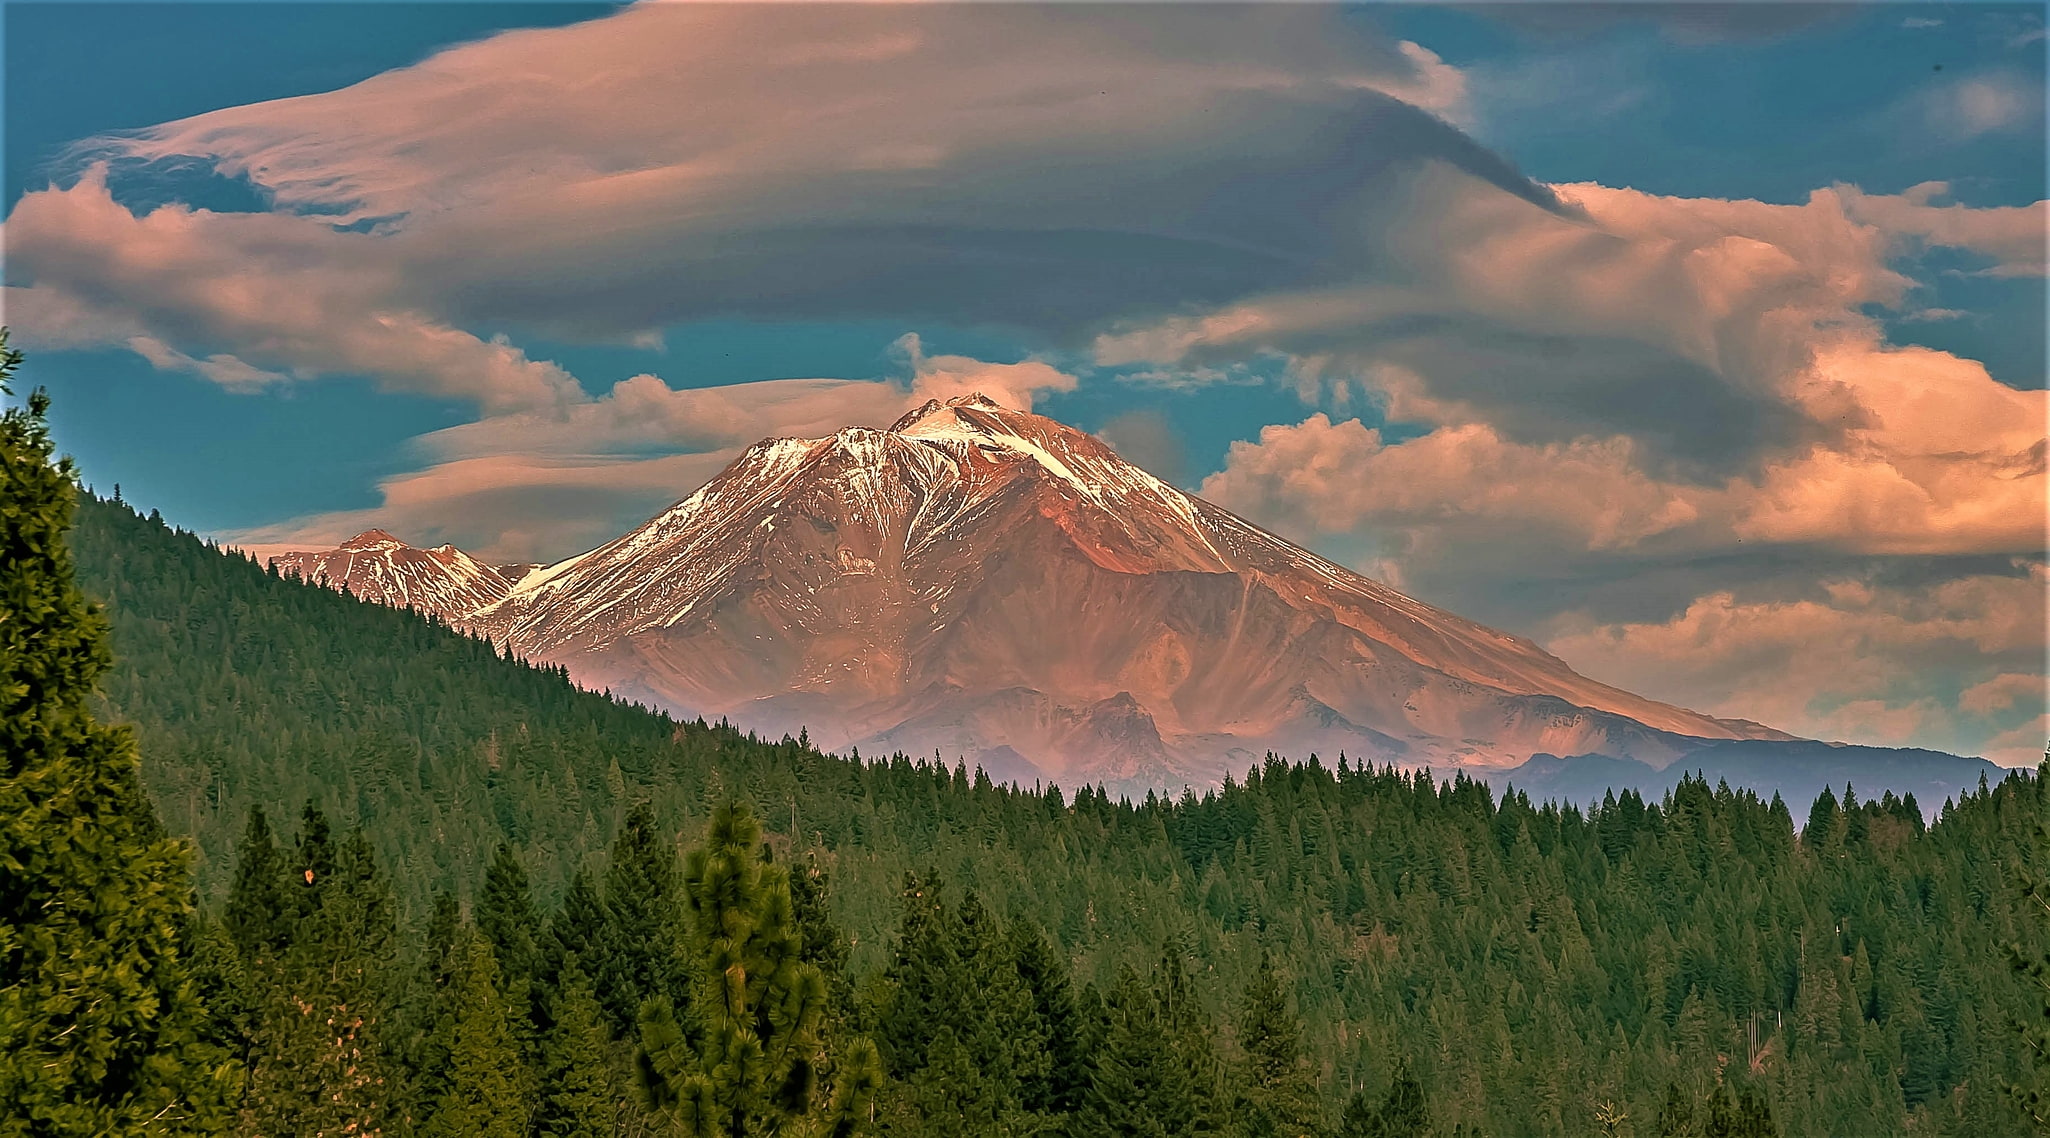 Mount Shasta Wilderness, United States